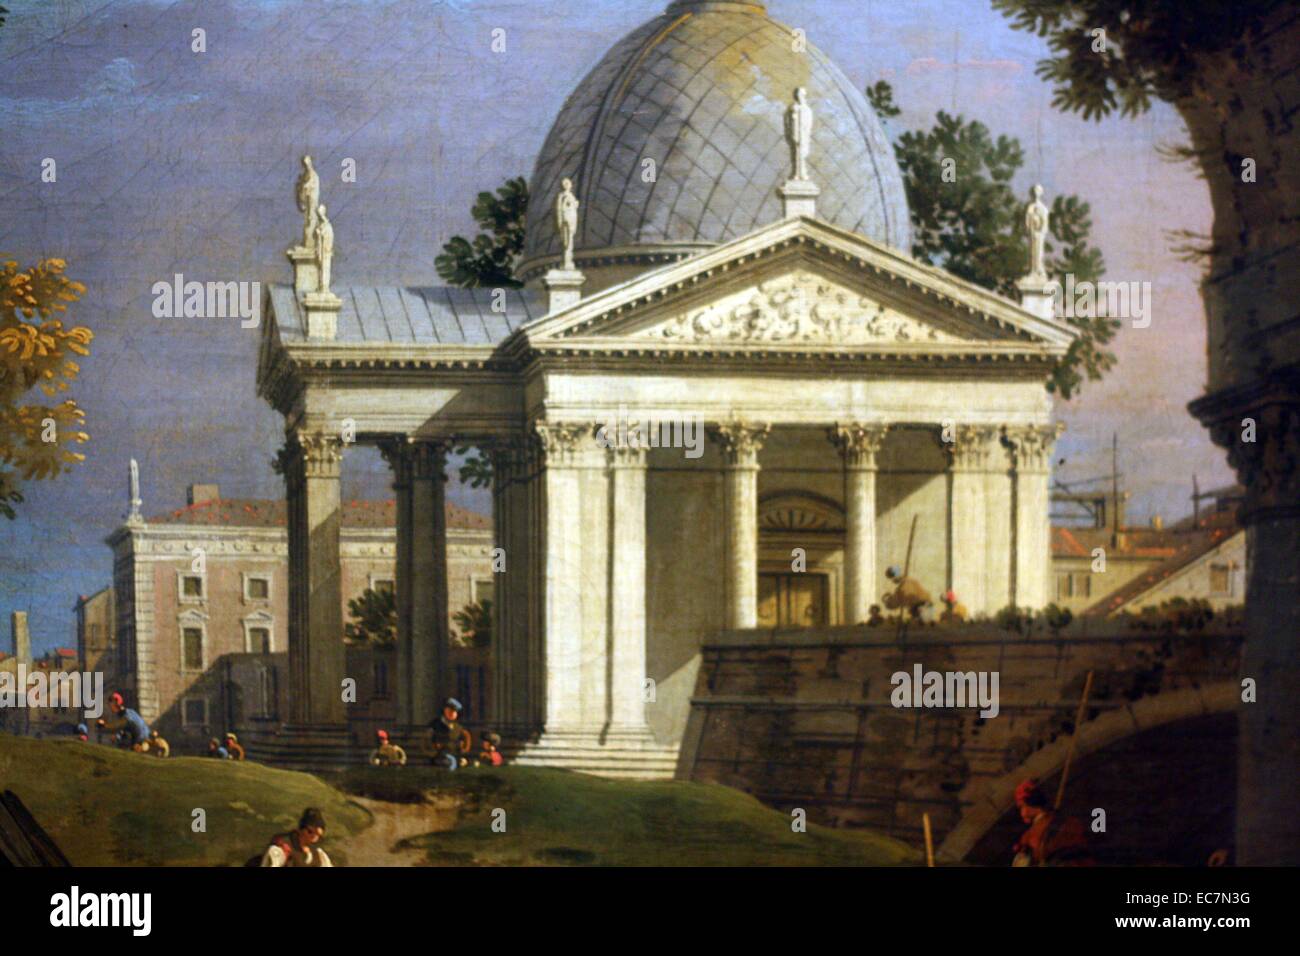 Giovanni Antonio Canal, genannt Canaletto (1697-1768). Landschaft mit einer Villa durch eine zerstörte Bogen gesehen. Öl auf Leinwand. Bilder von malerischen Ruinen mit erkennbaren Gebäuden und bunte Figuren gezeigt wurden sehr beliebt bei Reisenden nach Italien. Canaletto's Kunst war so bewundert von britischen Sammler, die er in London seit mehreren Jahren zwischen 1746 und 1755 gearbeitet. Stockfoto